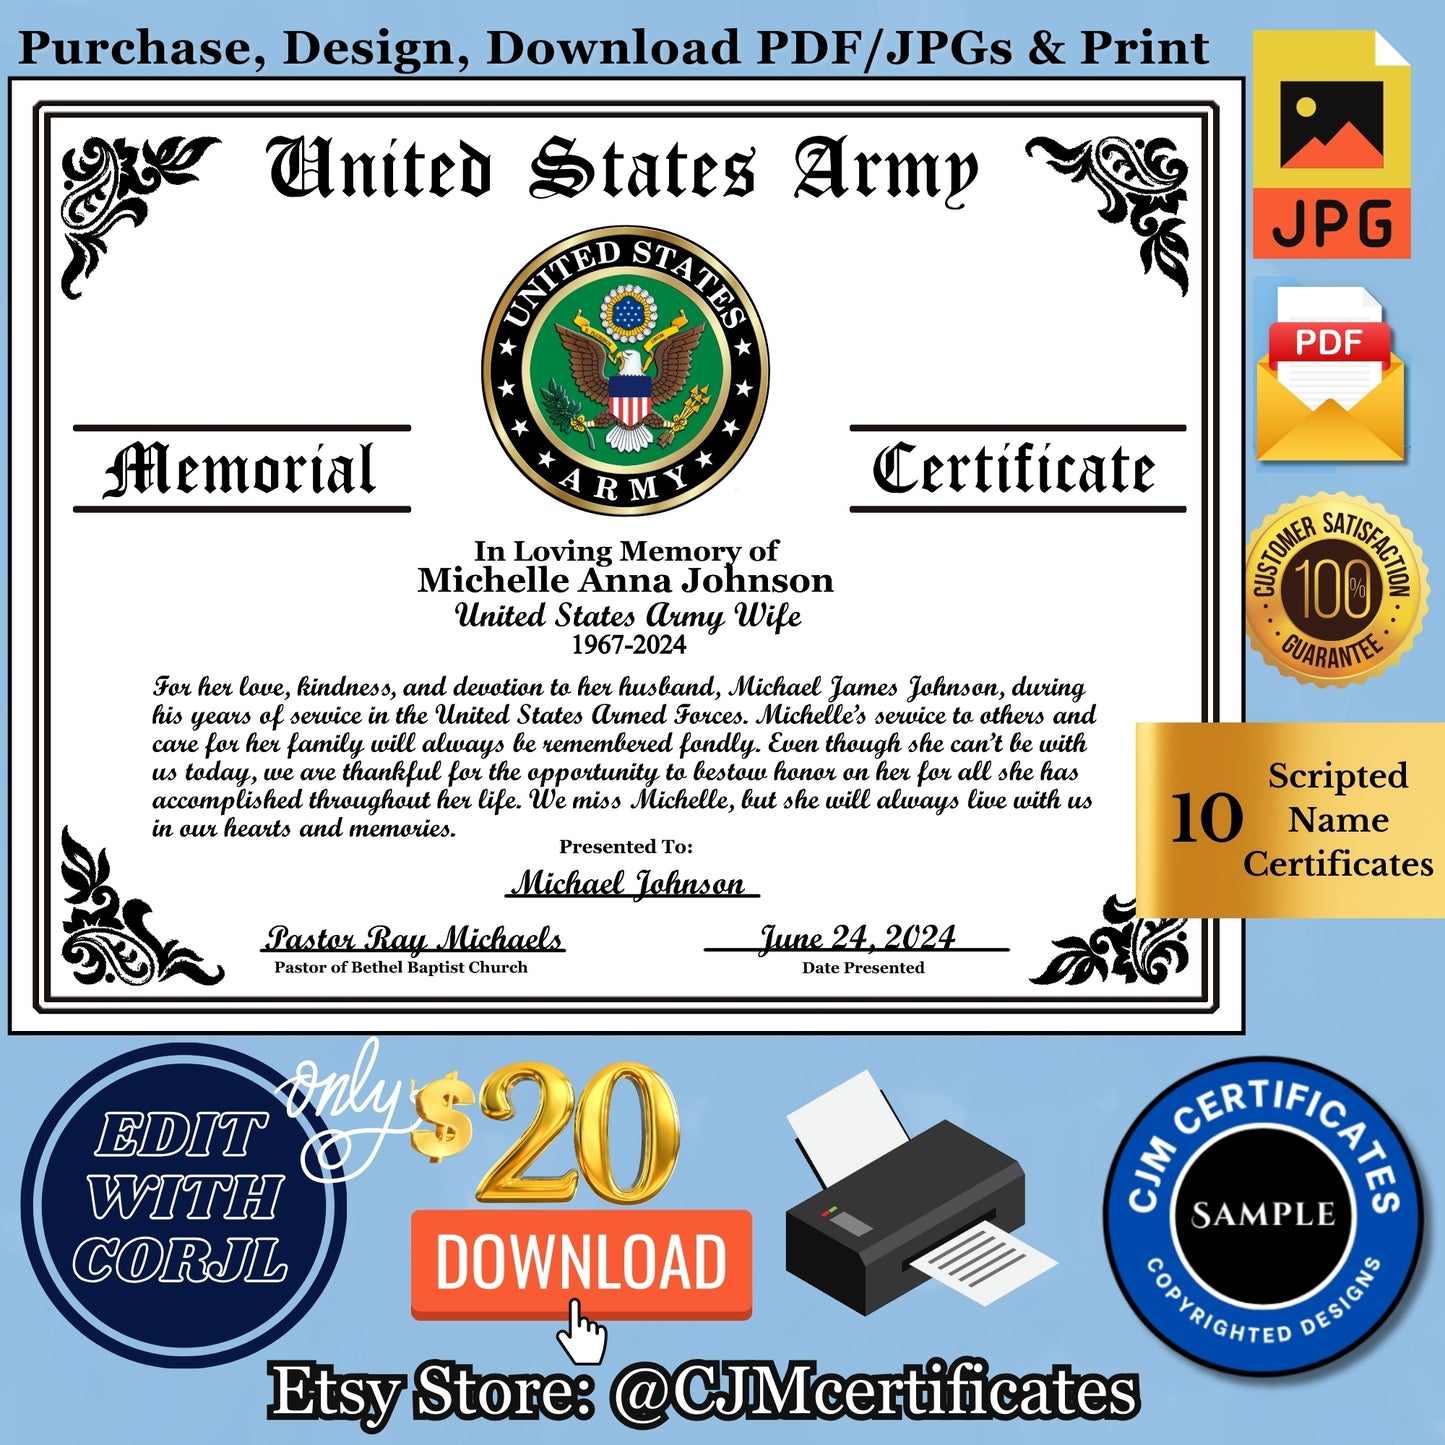 Personalized Military Veteran Memorial Certificate Downloads